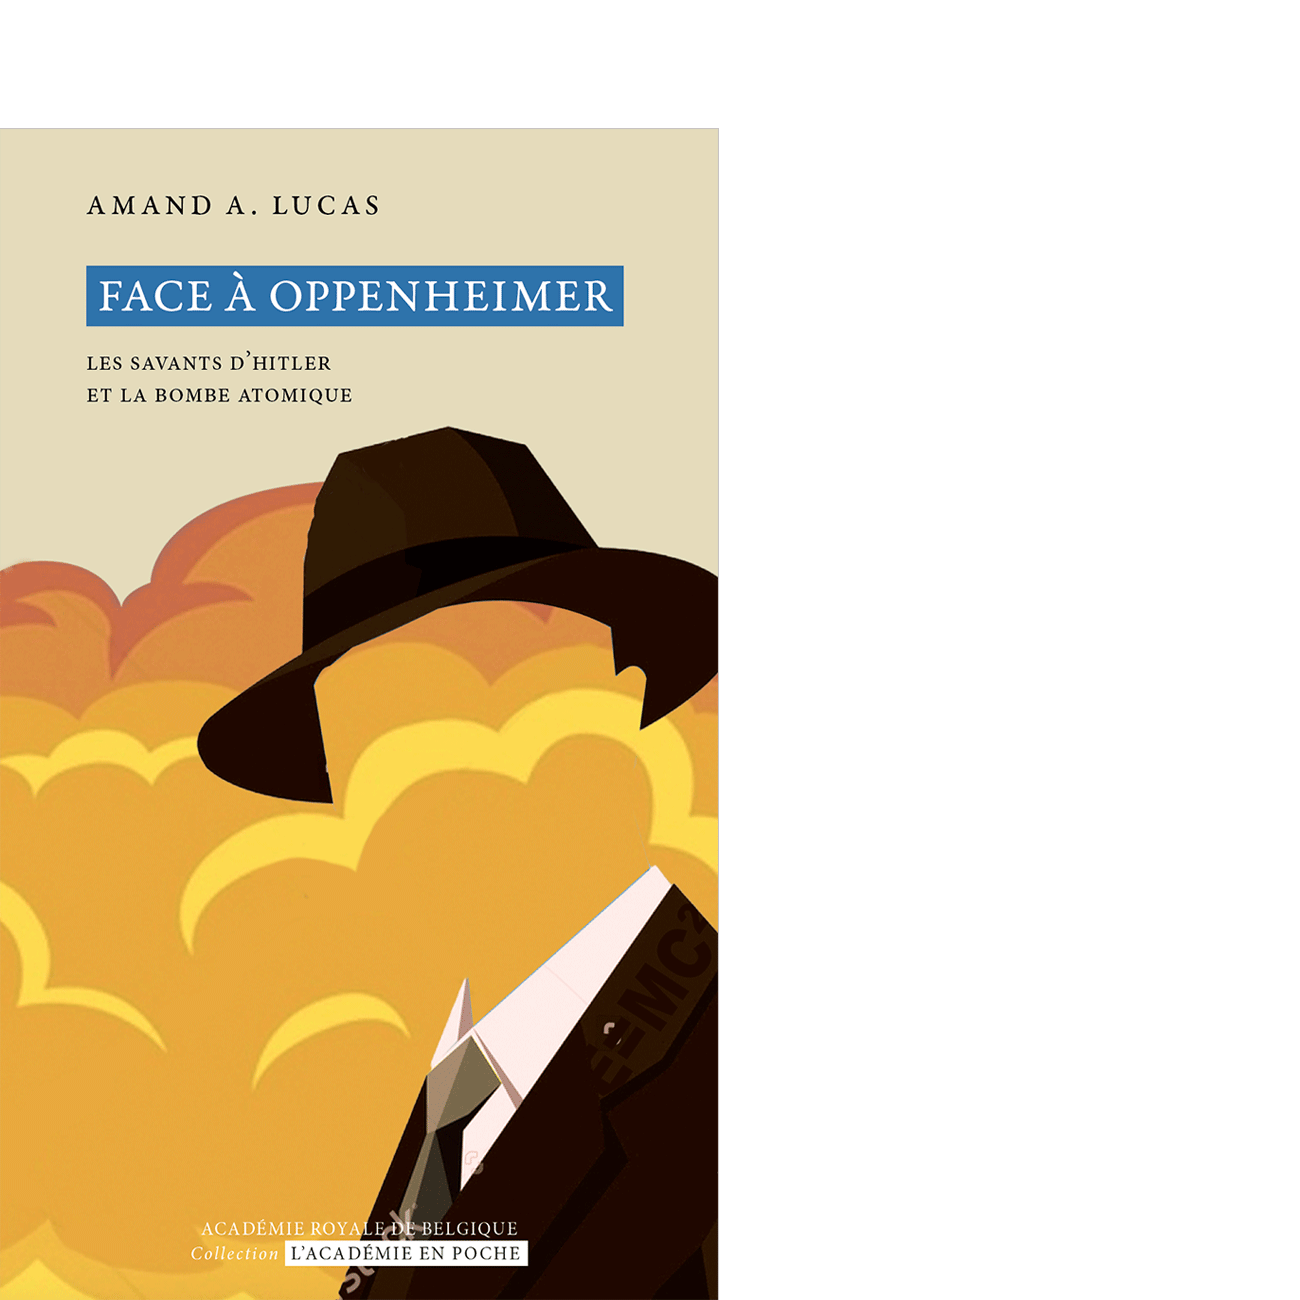 Face à Oppenheimer